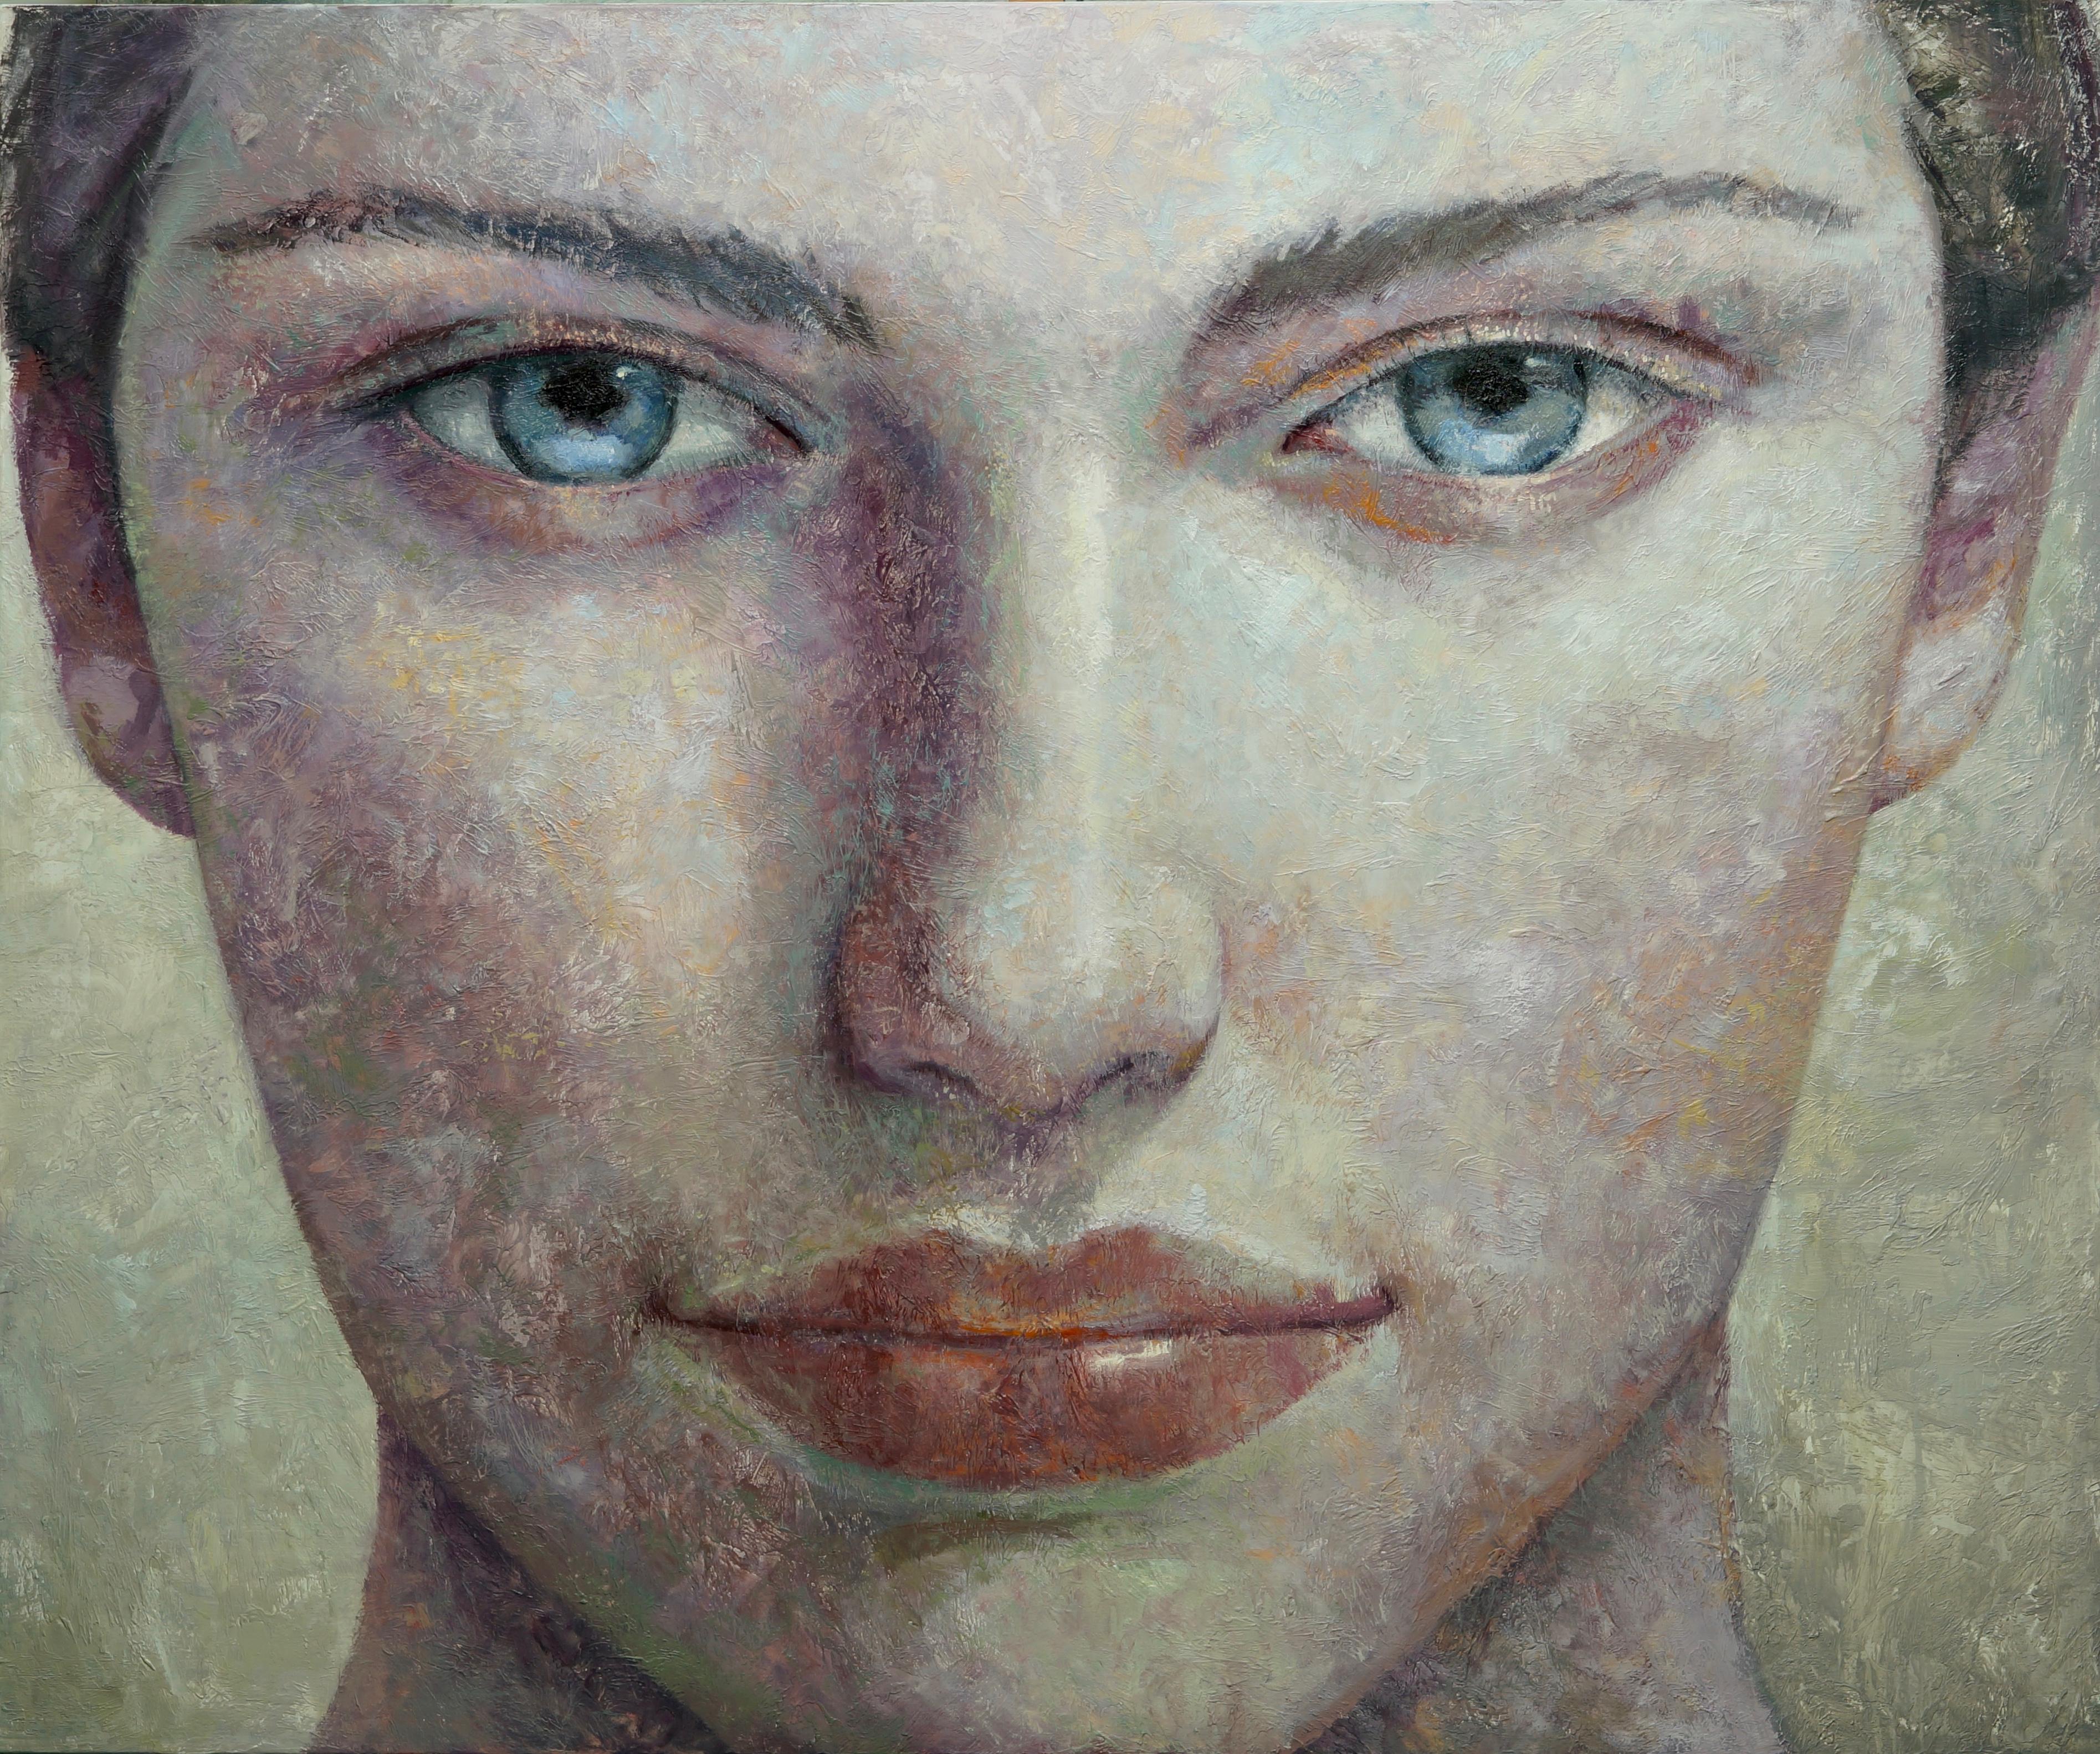 Montse Valdés Figurative Painting - 4-5-17 - 21st Century, Contemporary, Portrait Painting, Oil on Canvas